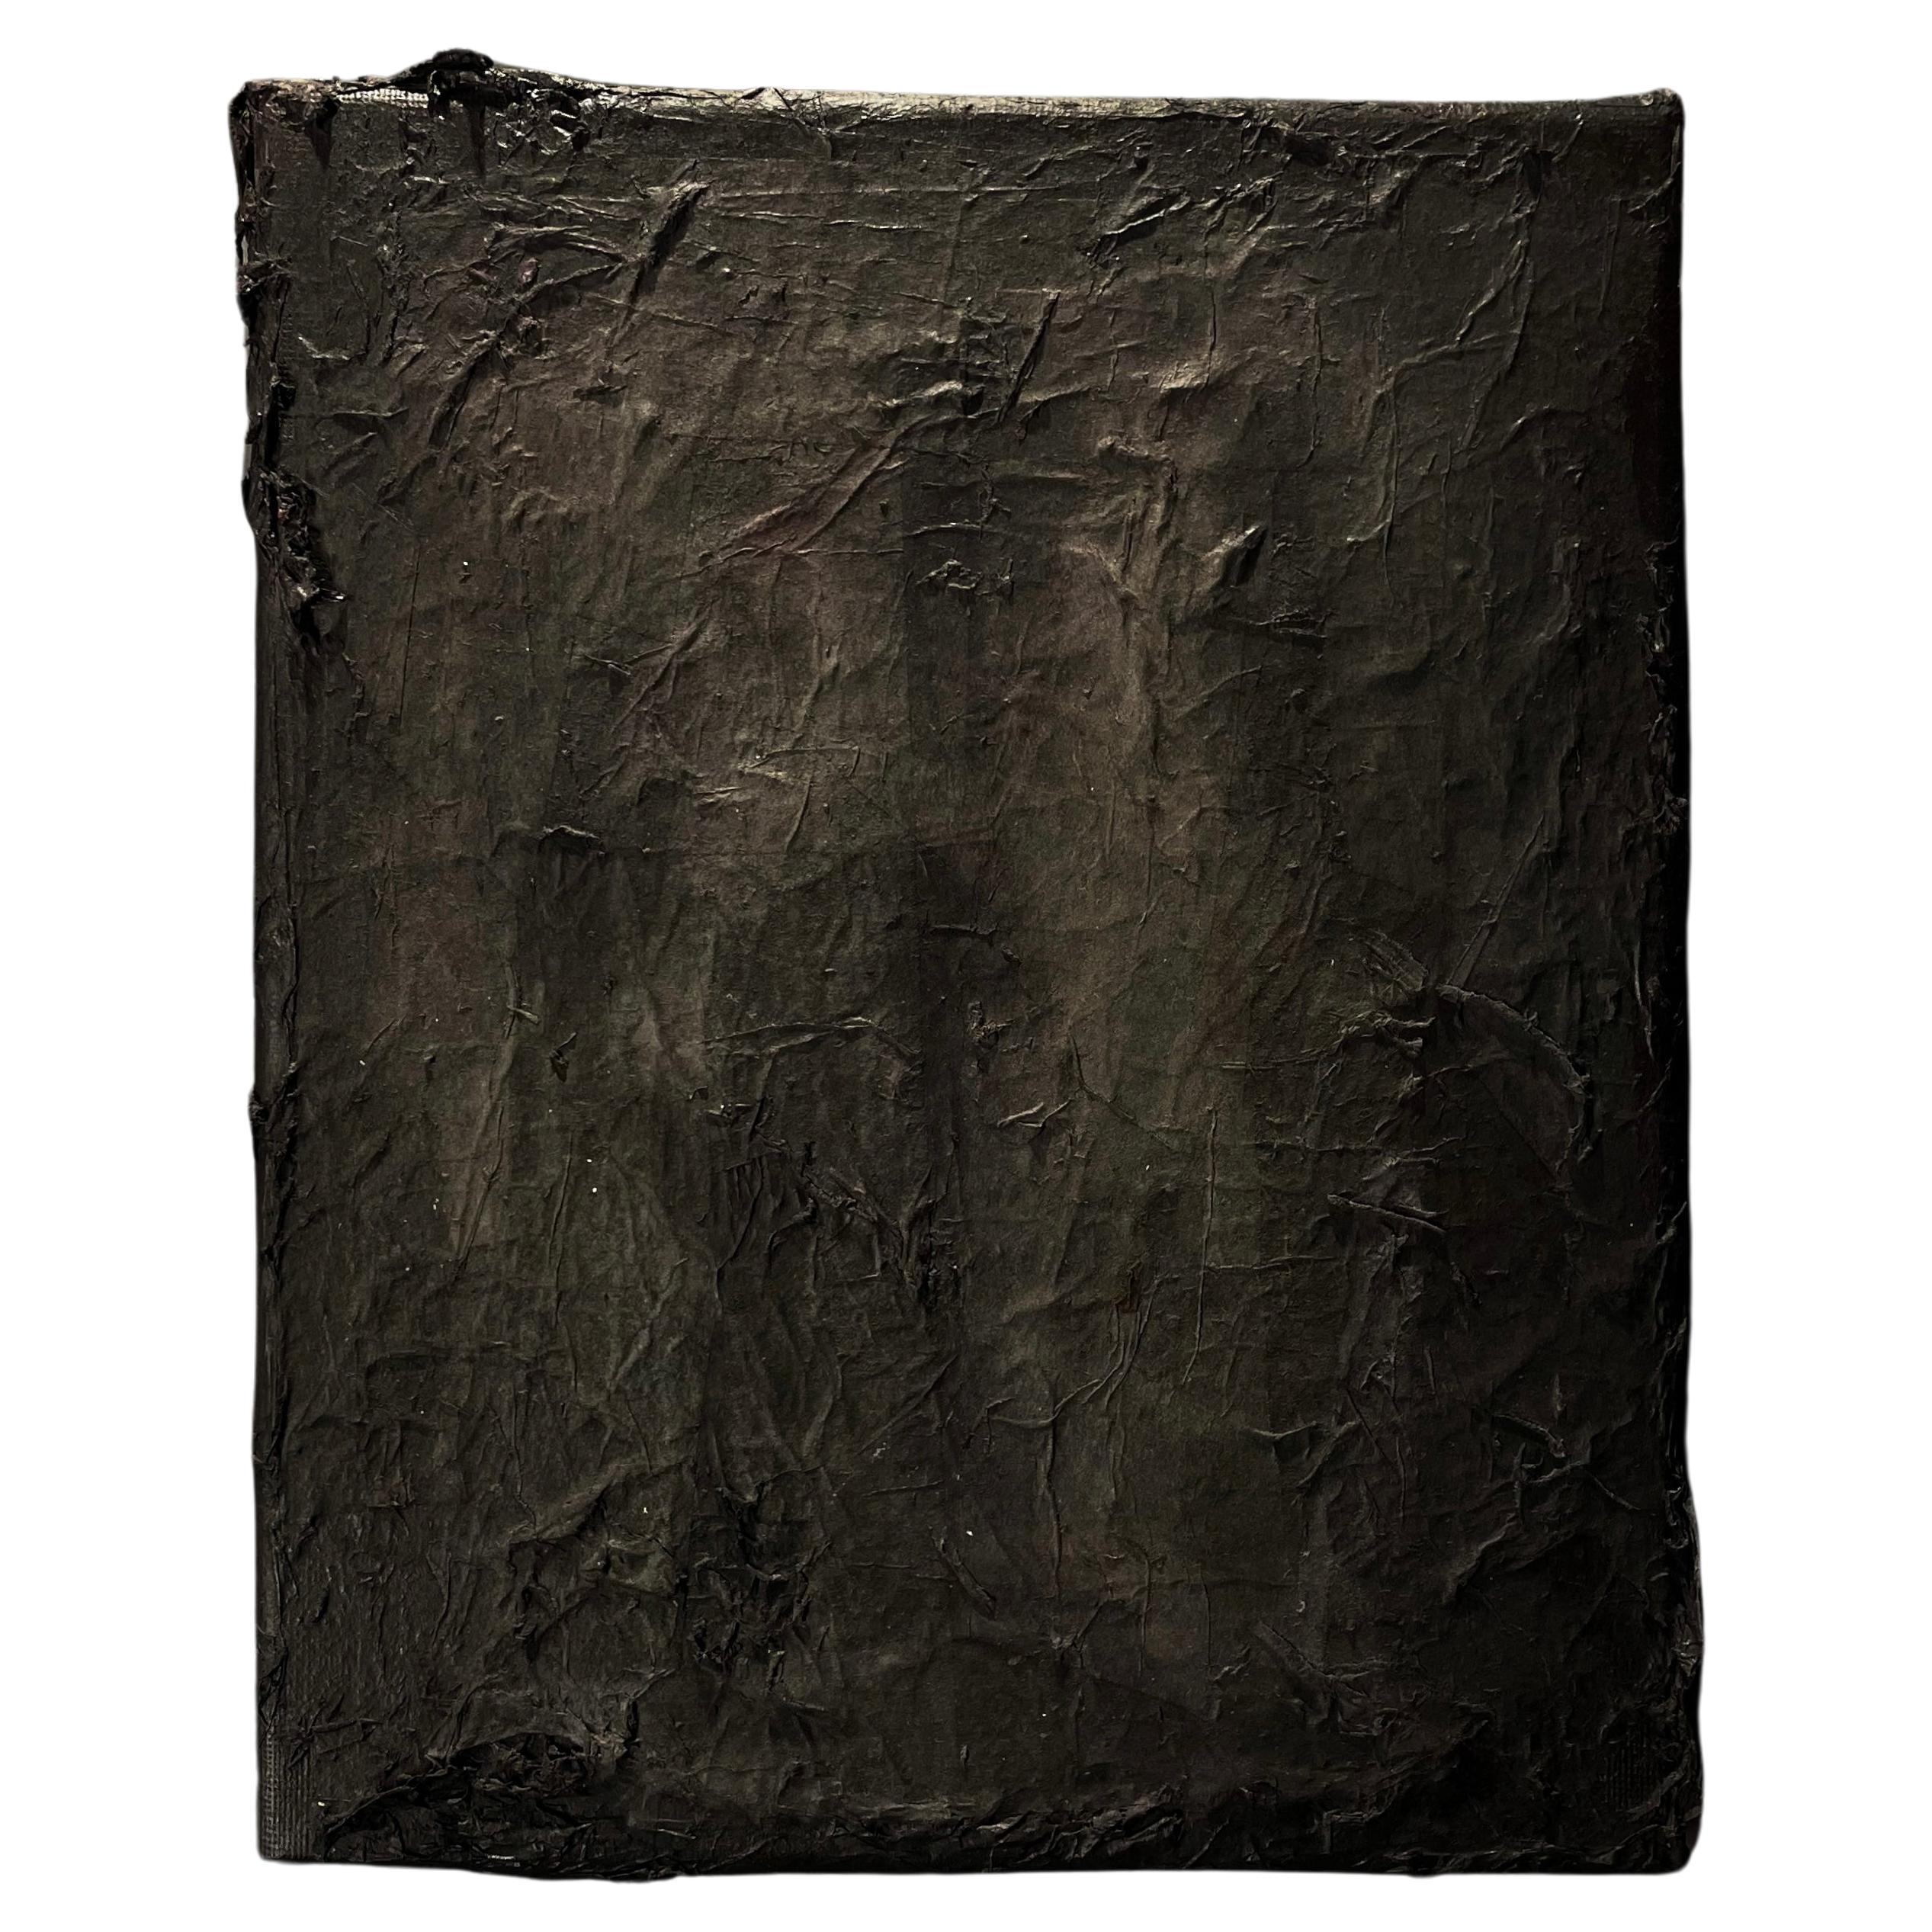 Modern Wabi Sabi Art by Pamela Tang - Abstract #180 Black